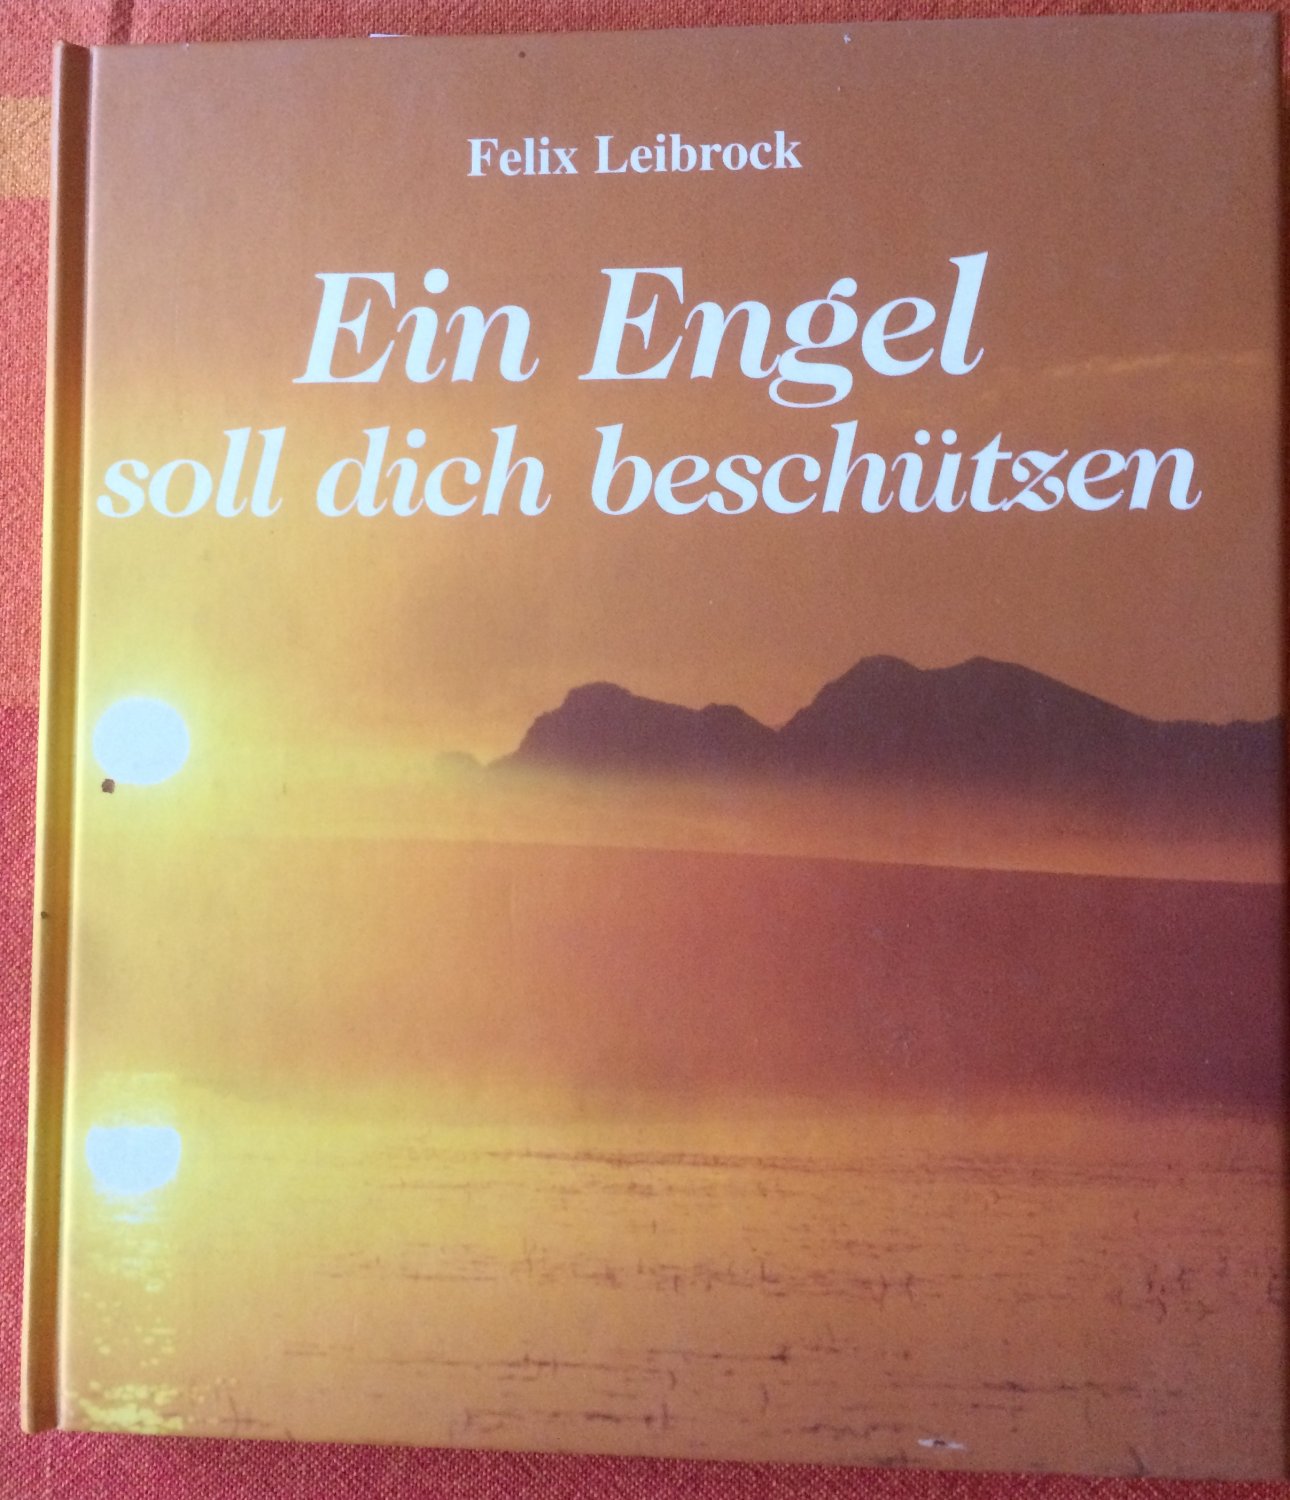 Ein Engel soll dich beschützen“ (Felix Leibrock) – Buch gebraucht kaufen –  A02zyotZ01ZZq